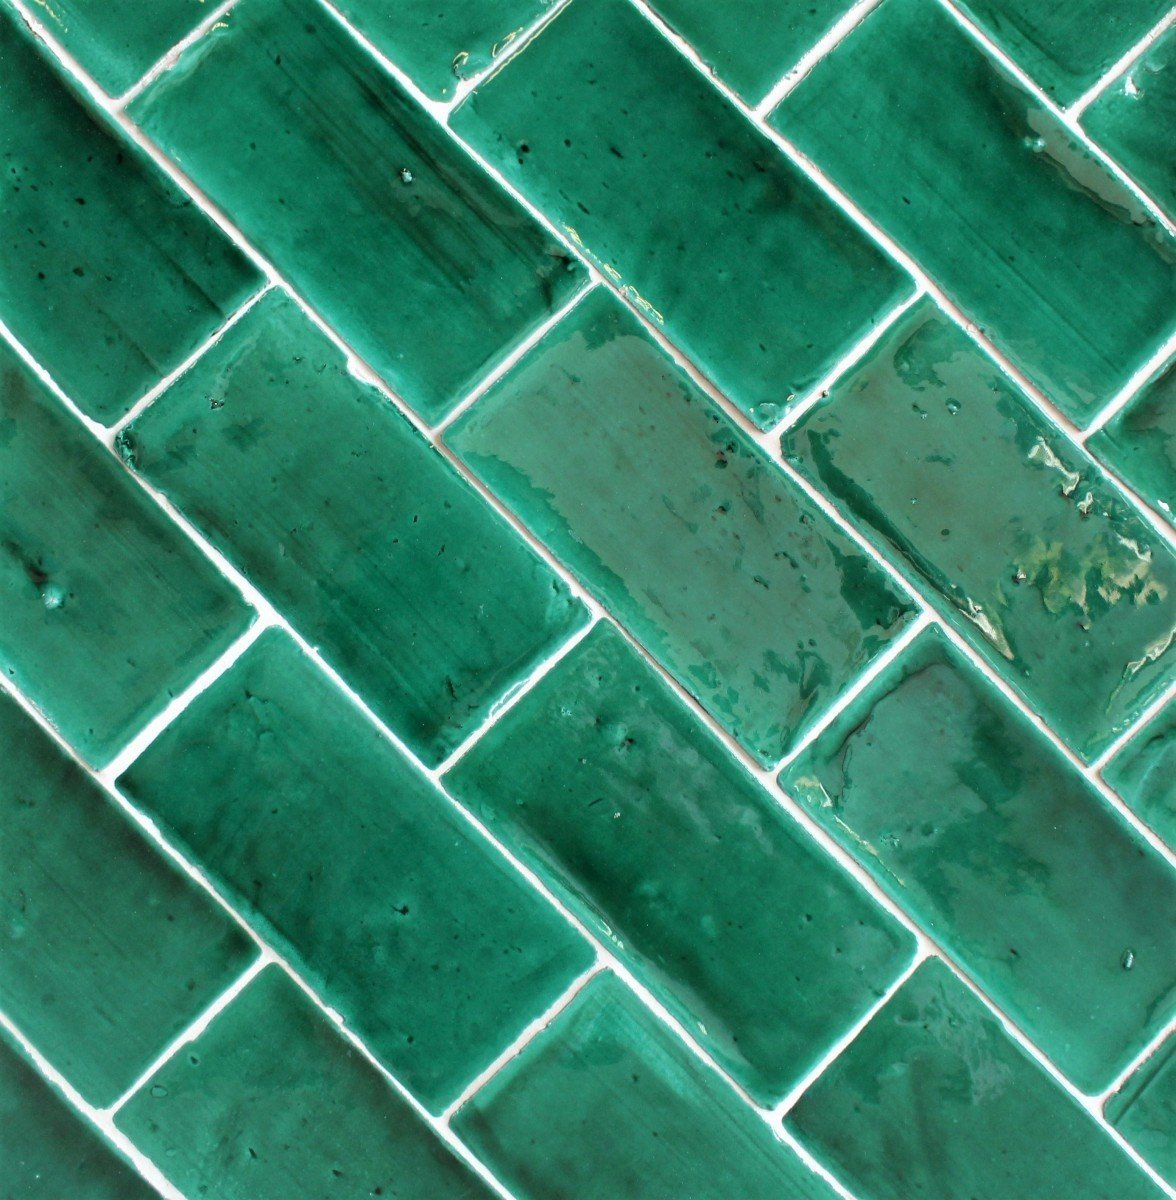 Glasierte Terracotta Wandfliesen - Farbe Grün, Referenz G305 - Format 10x20 cm (2)